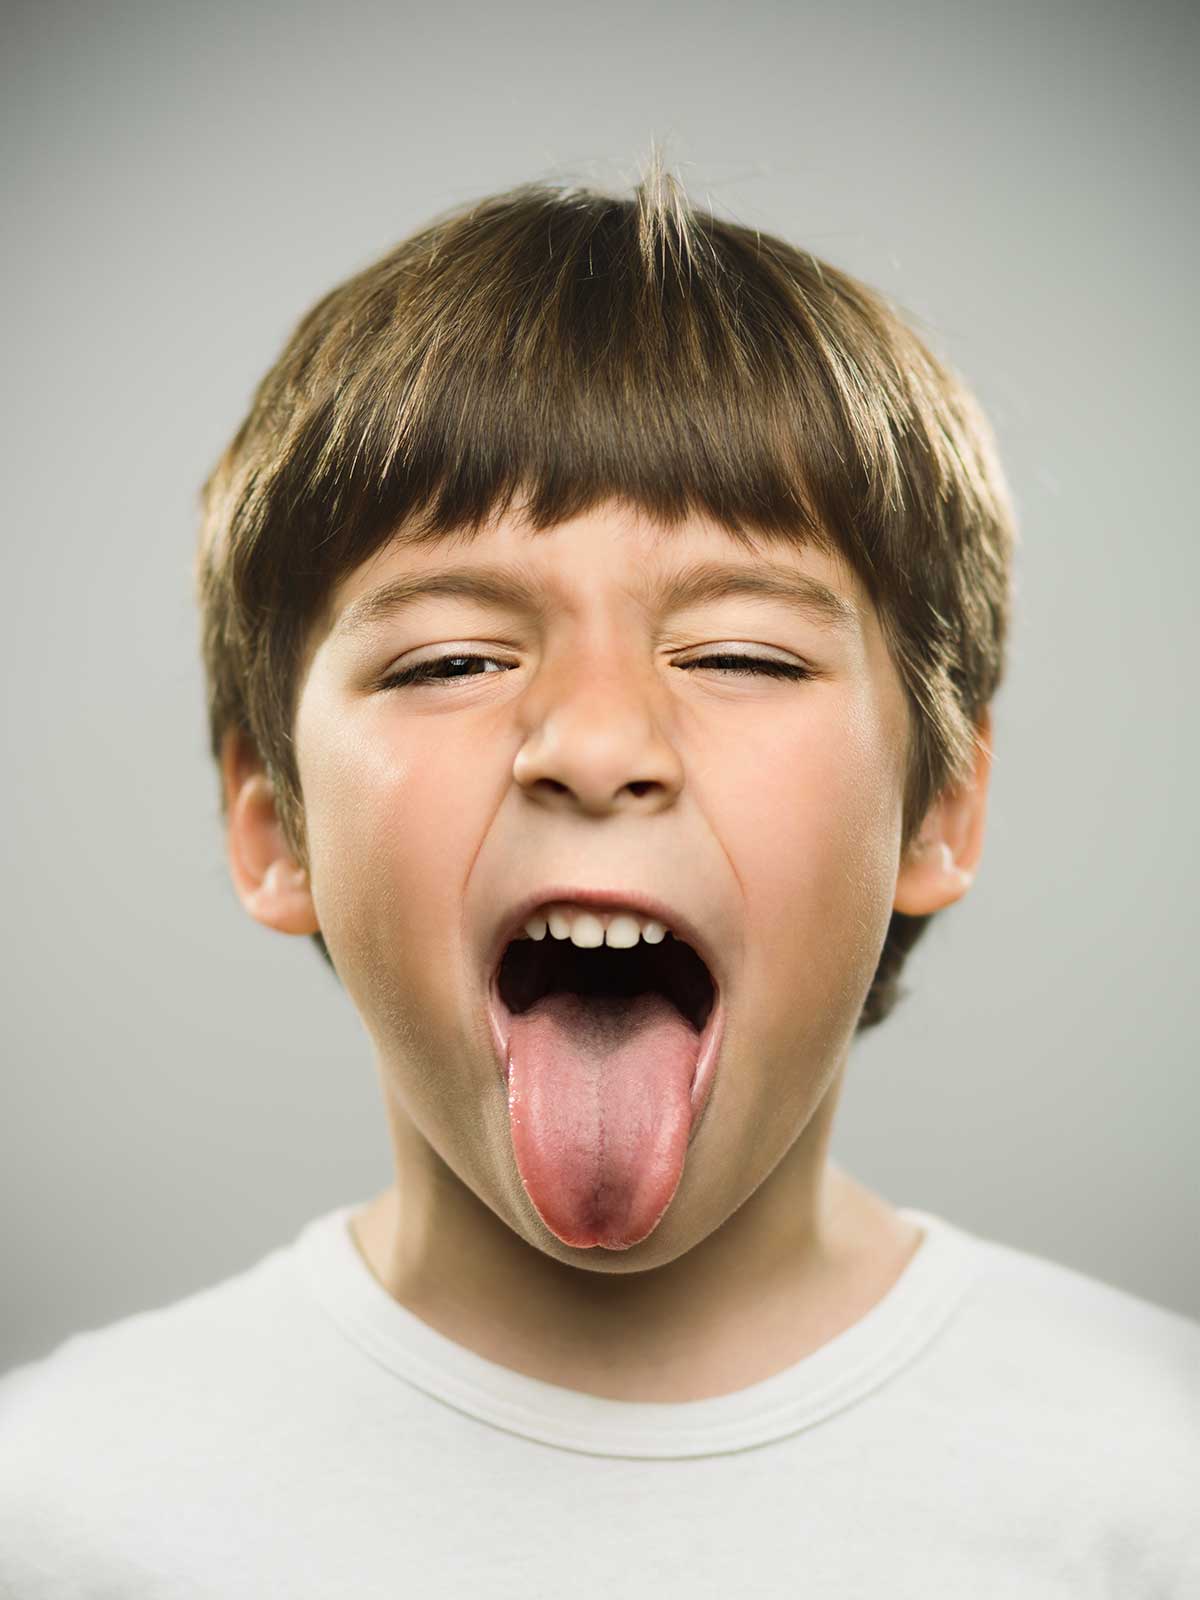 La lingua, l’organo responsabile della crescita oro-dentale